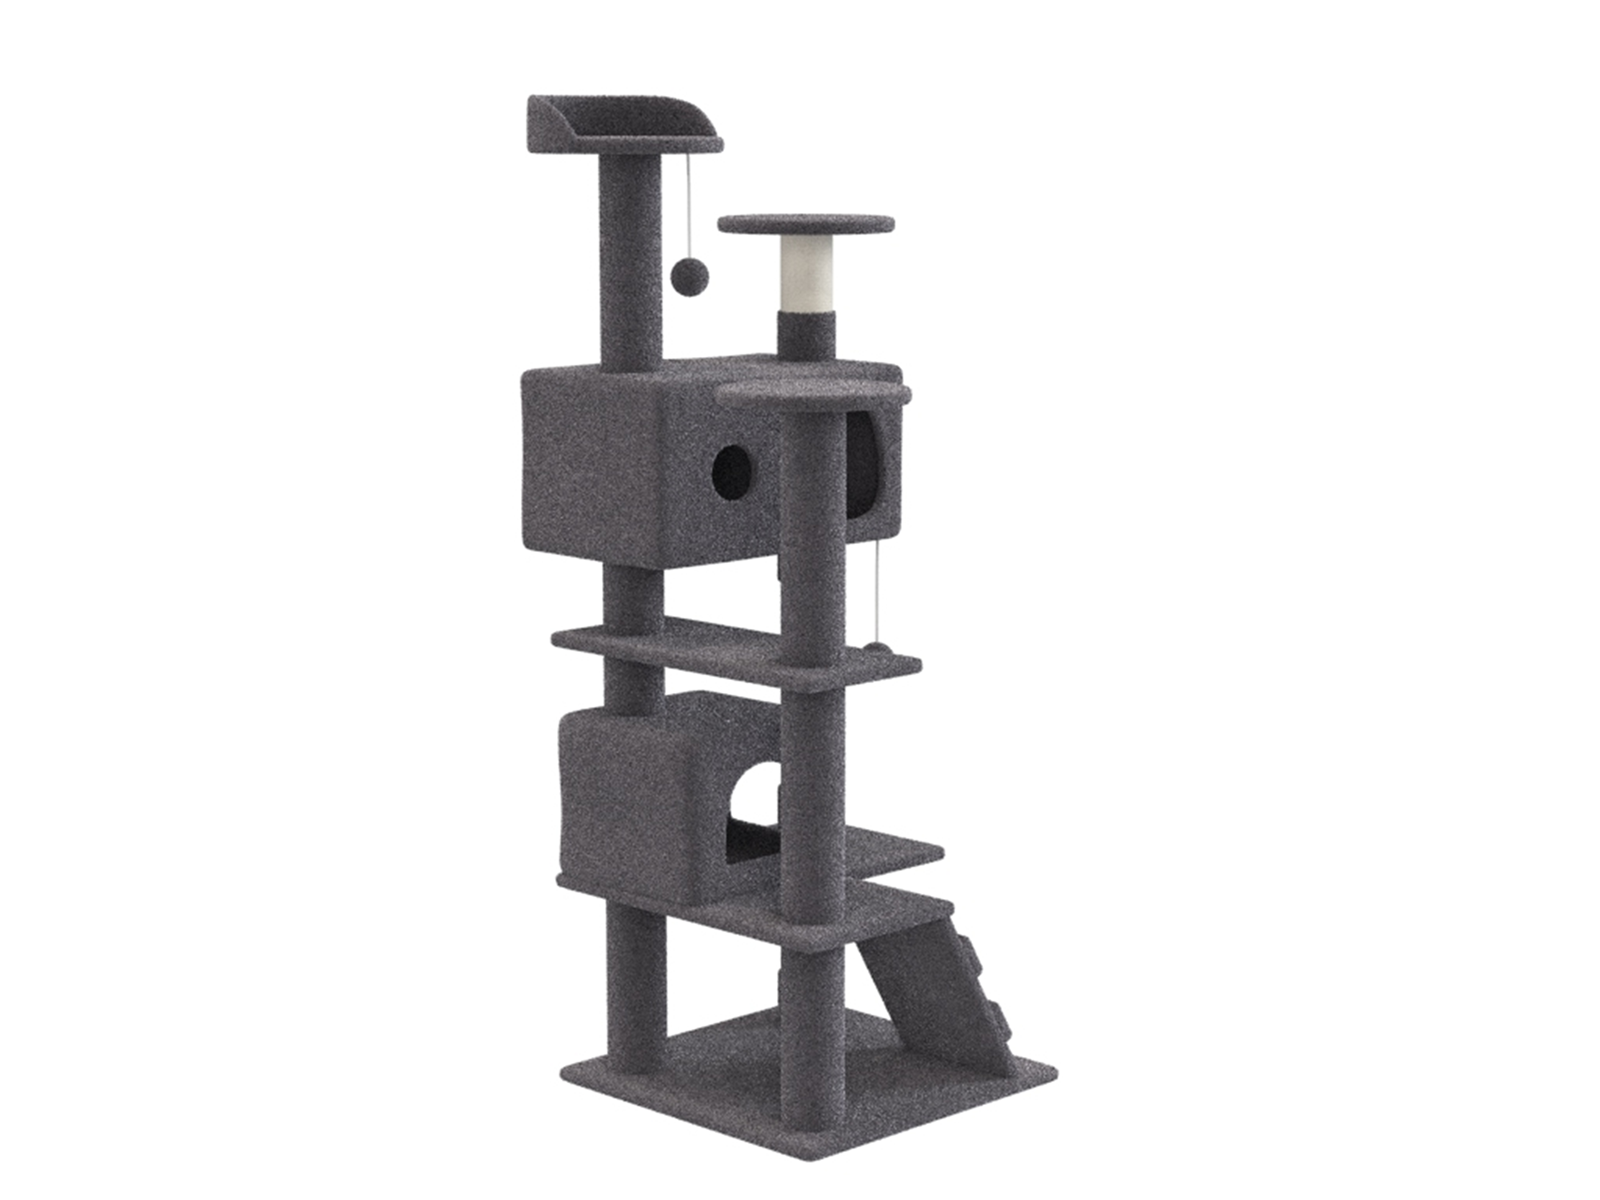 Zenstyle 53-in Cat Tree & Condo Scratching Post Tower, Dark Gray -  